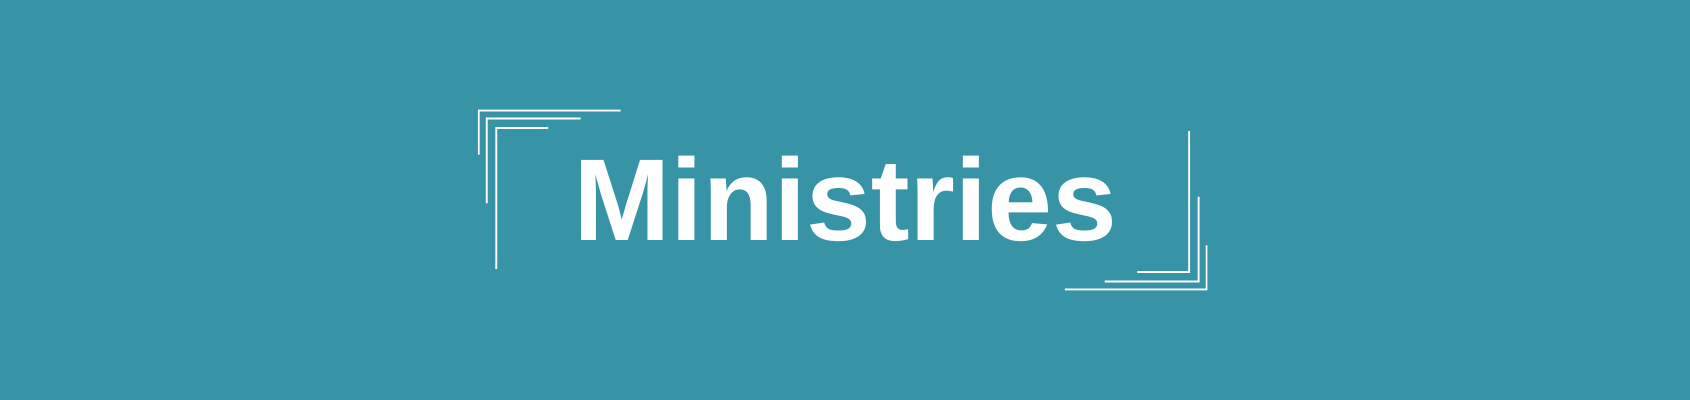 Ministries on the leadership team